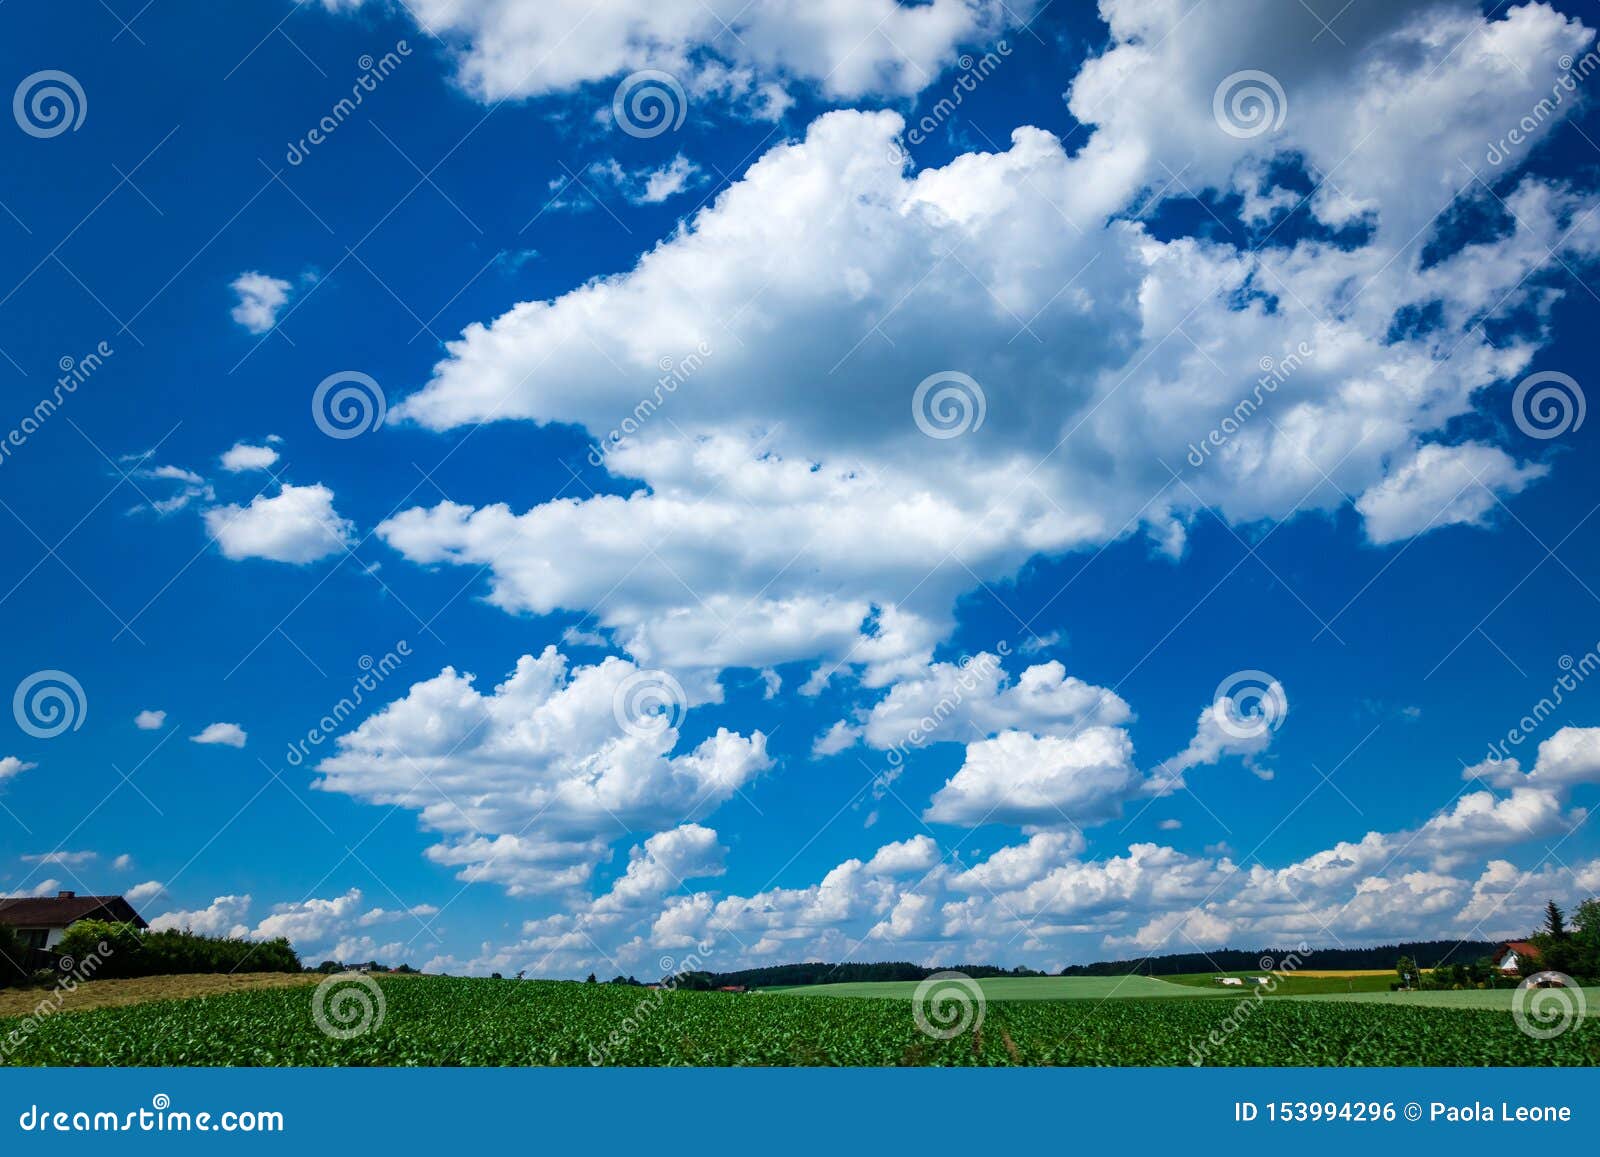 Đám mây nền xanh là những vẻ đẹp của thiên nhiên ngập tràn sức sống. Hãy xem những bức ảnh đẹp này để cảm nhận thiên nhiên trong sáng và tinh khiết nhưng cũng rất sống động và đầy sức sống.